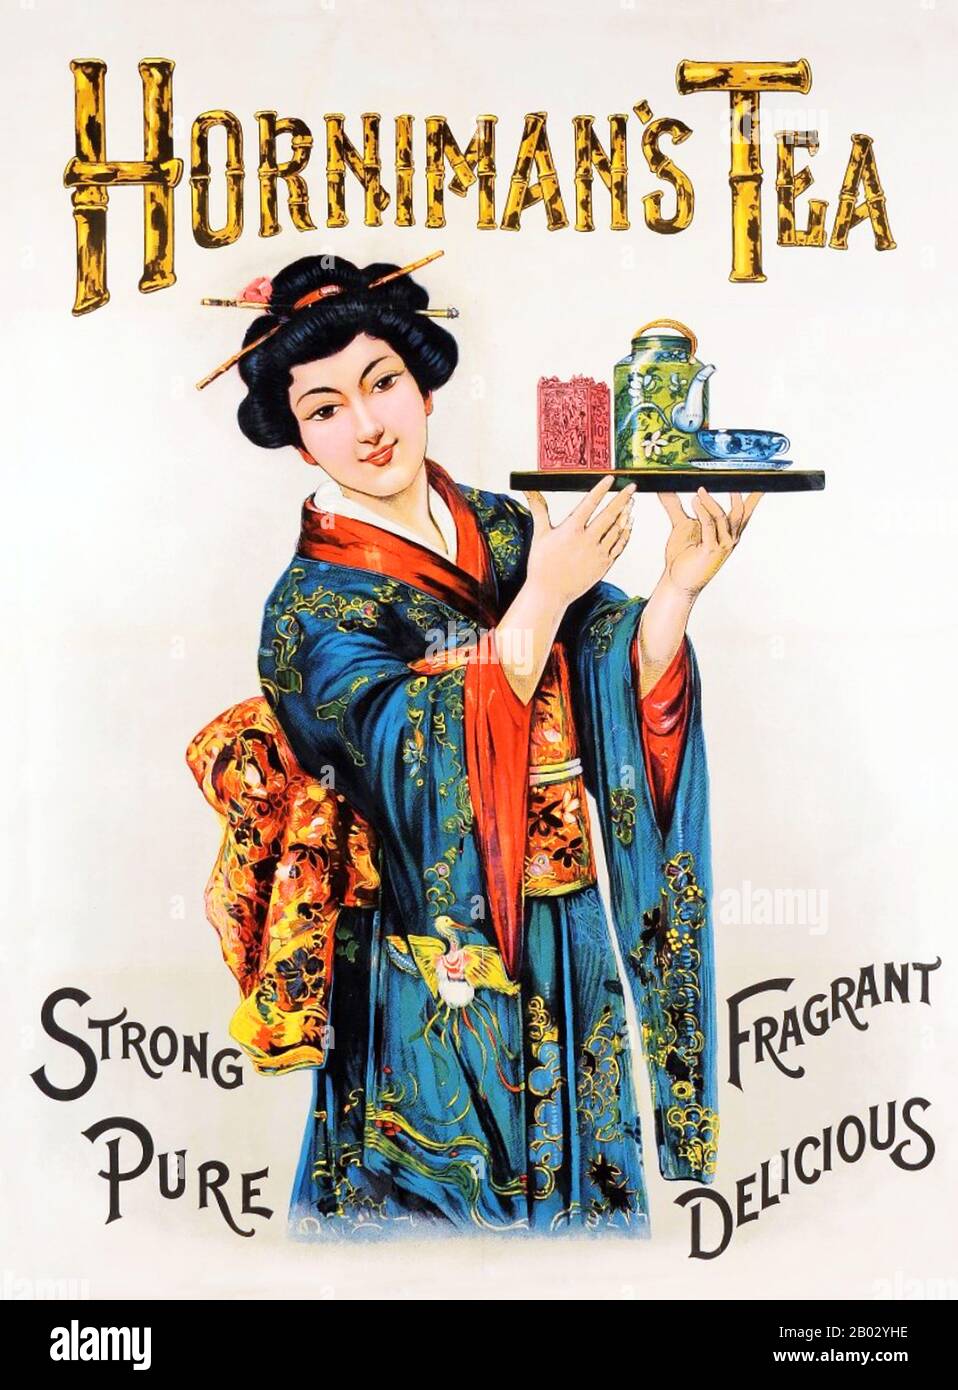 Horniman's Tea ist eine Teemarke, die derzeit im Besitz von Douwe Egberts ist. Das ursprüngliche Teehandel- und Mischgeschäft "Horniman's Tea Company" wurde 1826 in Newport, Insel Wight, vom Händler John Horniman gegründet. Im Jahr 1852 zog er das Unternehmen nach London, um näher an den verschweißten Lagerhäusern der London Docks, dem damals größten Teehandel der Welt, zu sein. Bis 1826 waren nur lose Tees verkauft worden, die es skrupellosen Händlern erlaubten, durch Hinzufügen anderer Gegenstände wie Heckenausschnitte oder Staub die Gewinne zu steigern. Horniman revolutionierte den Teehandel, indem er mechanische Geräte zur Beschleunigung des Prozesses der Fil verwendete Stockfoto